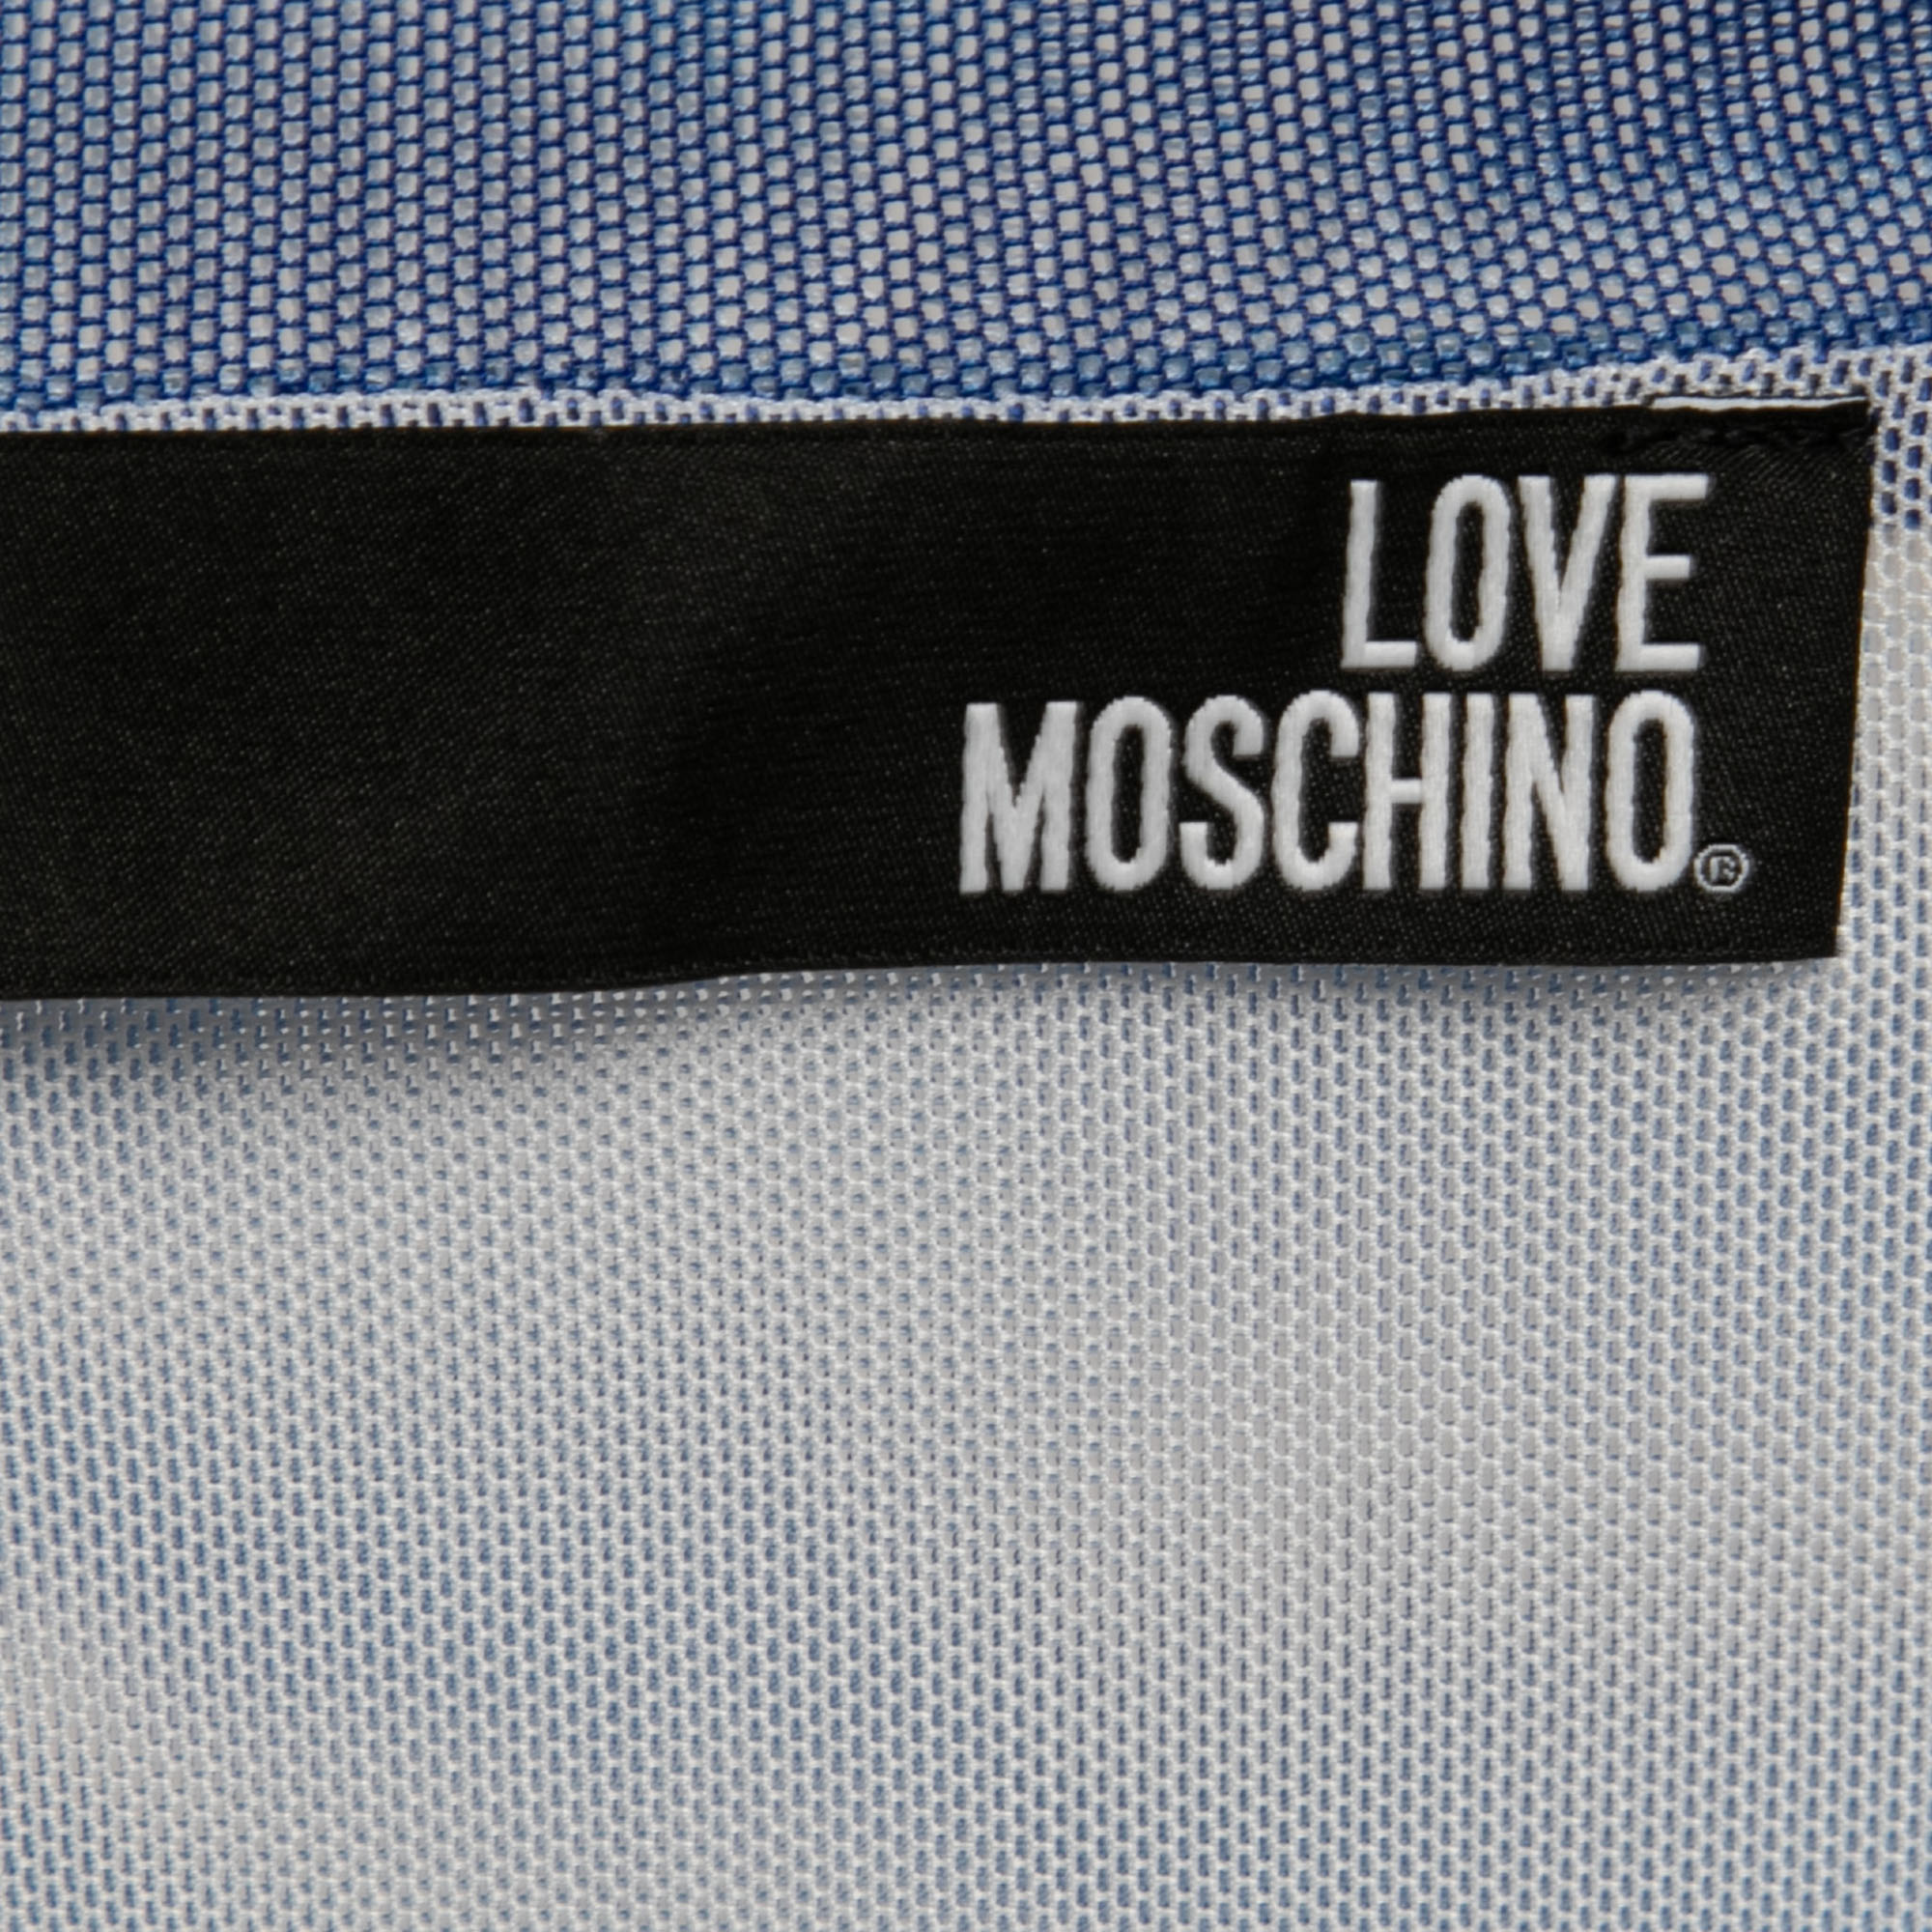 Love Moschino Blue Tye-Dye Effect Mesh T-Shirt S